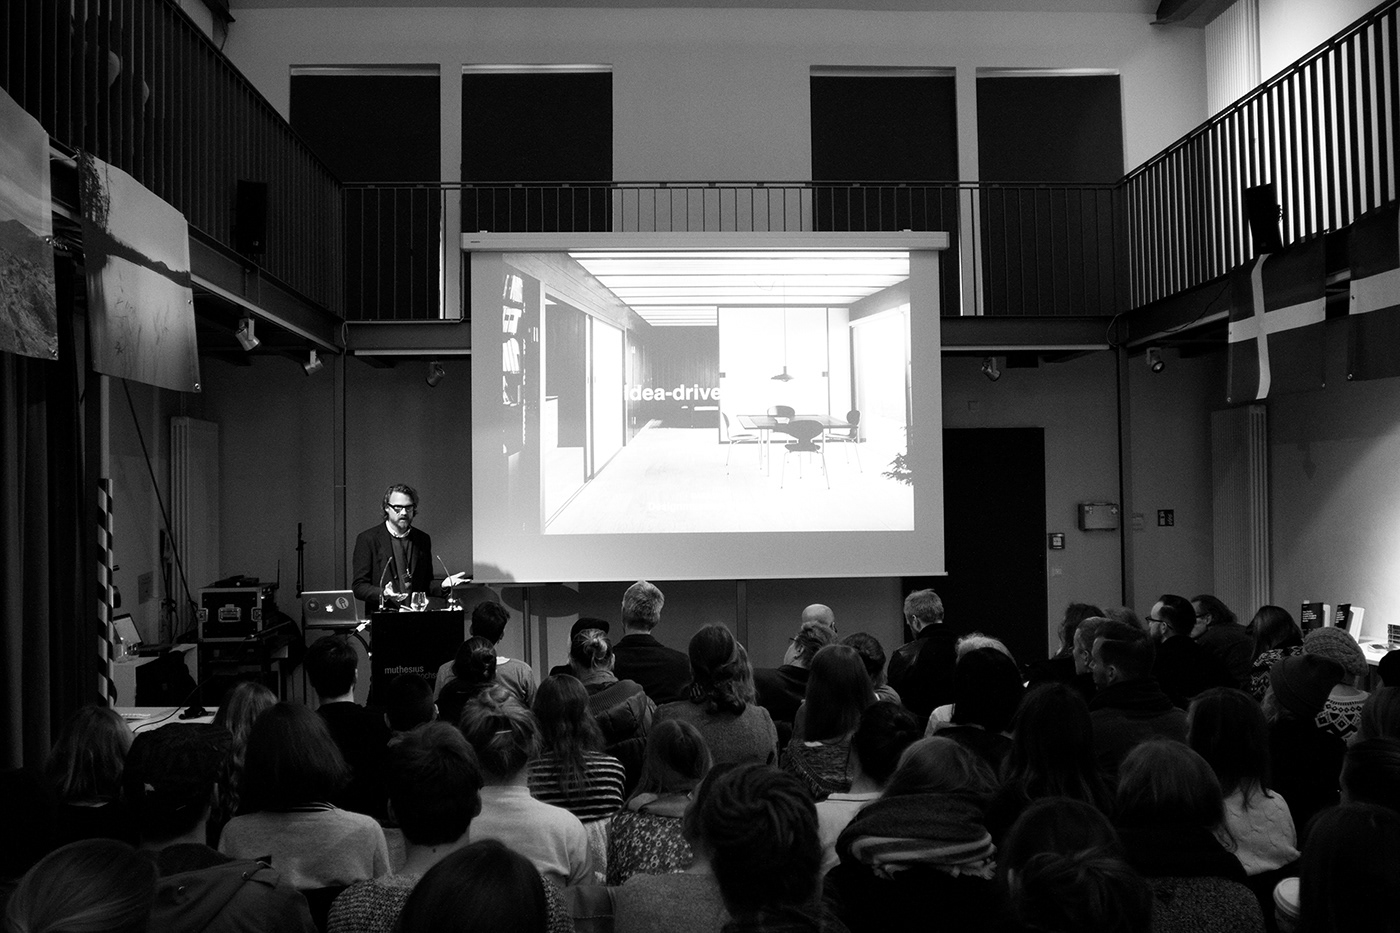 Scandinavia black and white denmark Sweden norway european design award conference book design design research Das Eine Designstudio